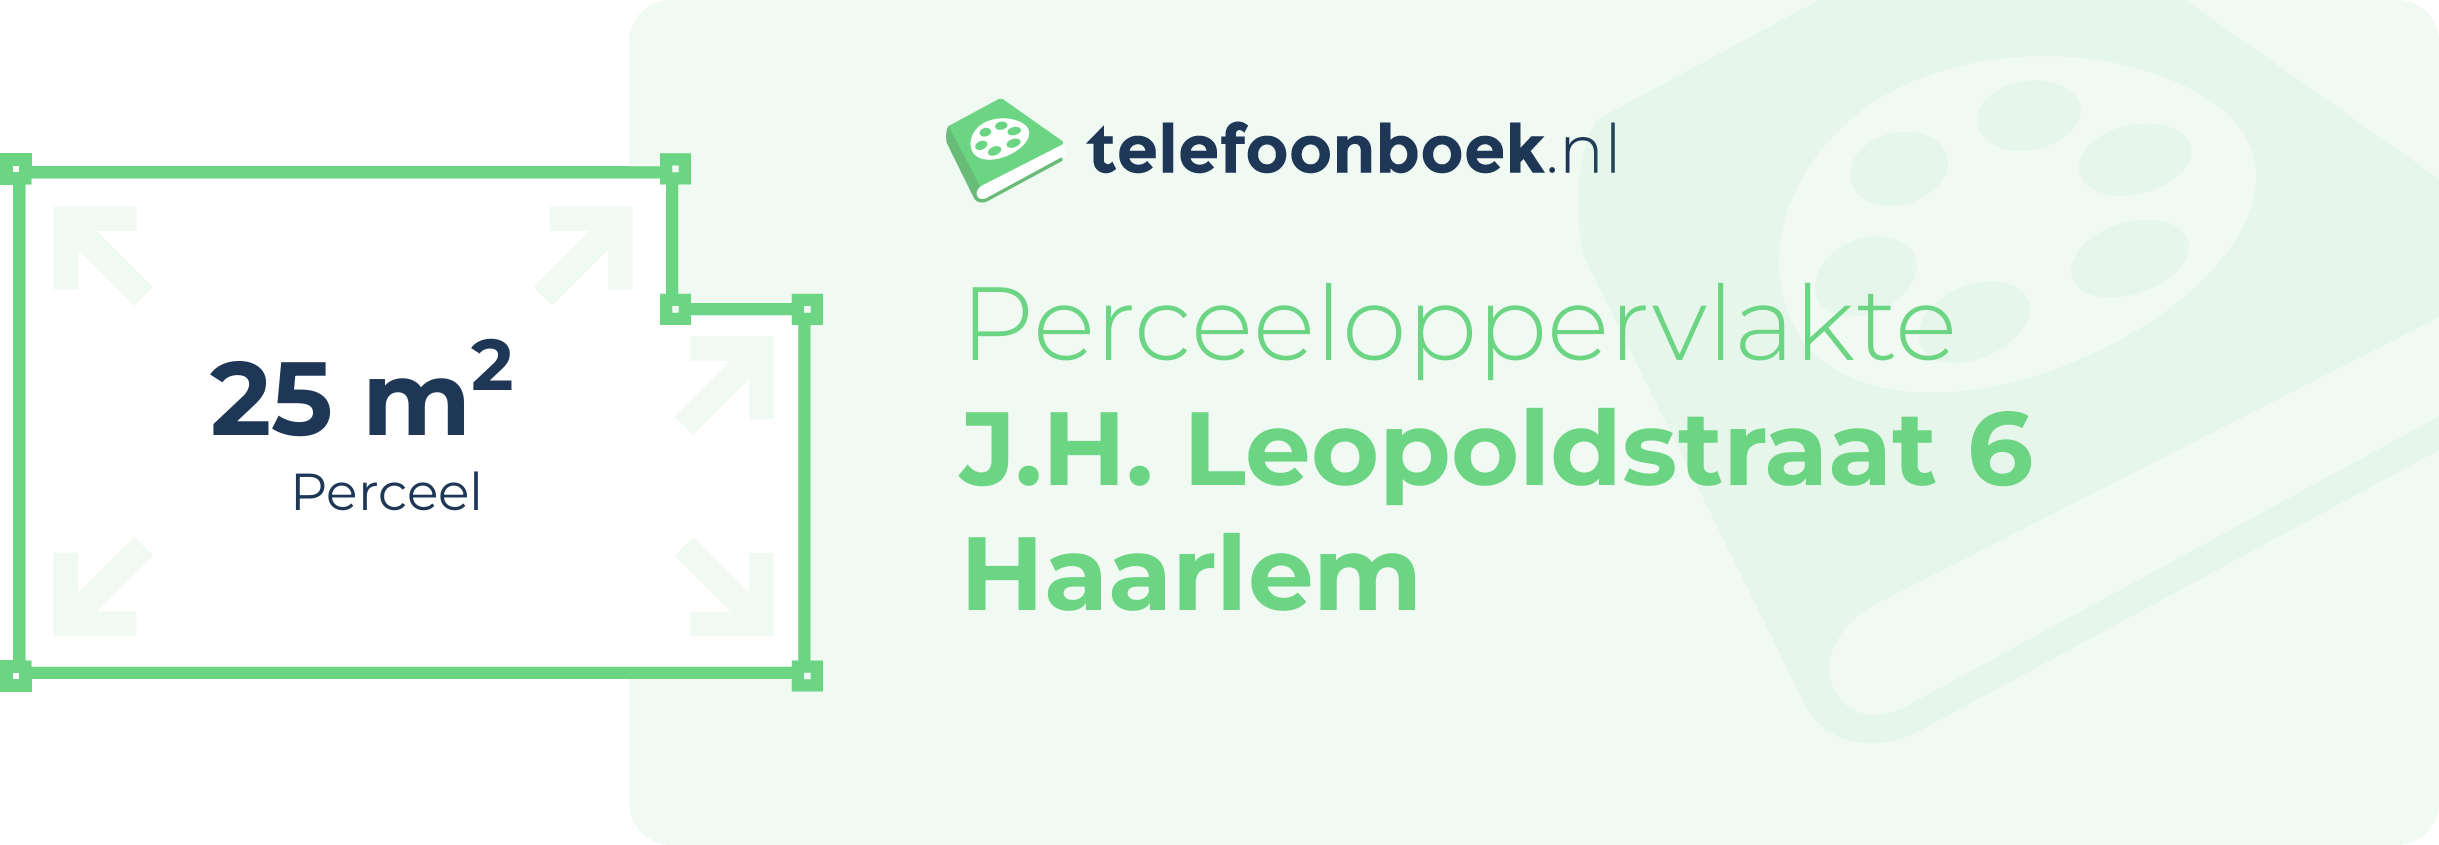 Perceeloppervlakte J.H. Leopoldstraat 6 Haarlem